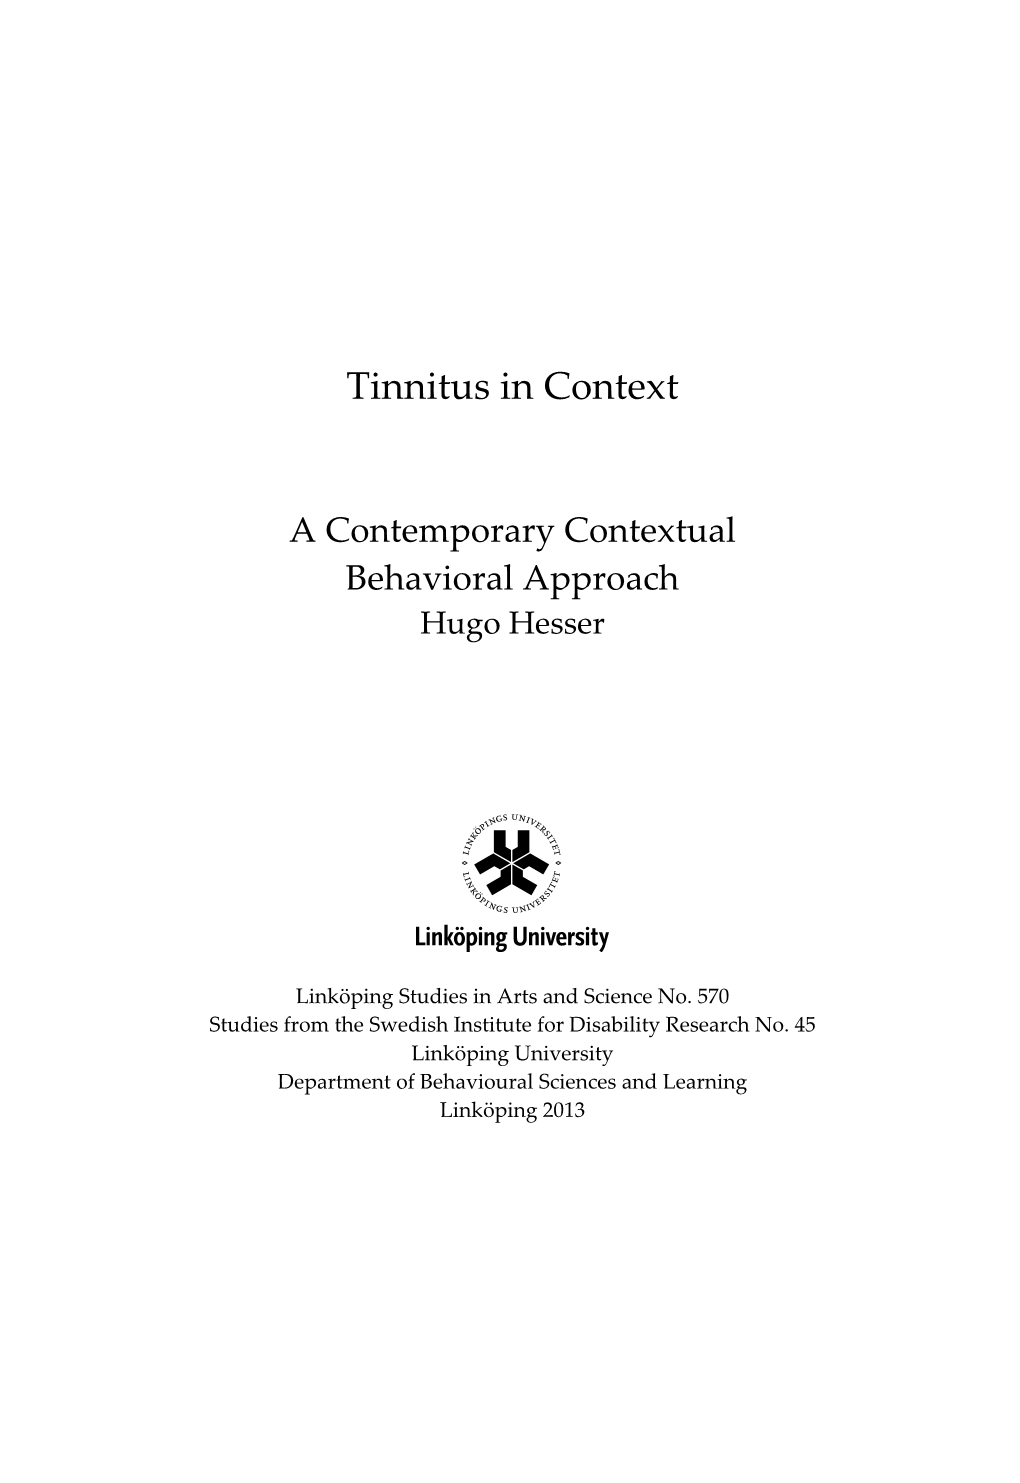 Tinnitus in Context a Contemporary Contextual Behavioral Approach